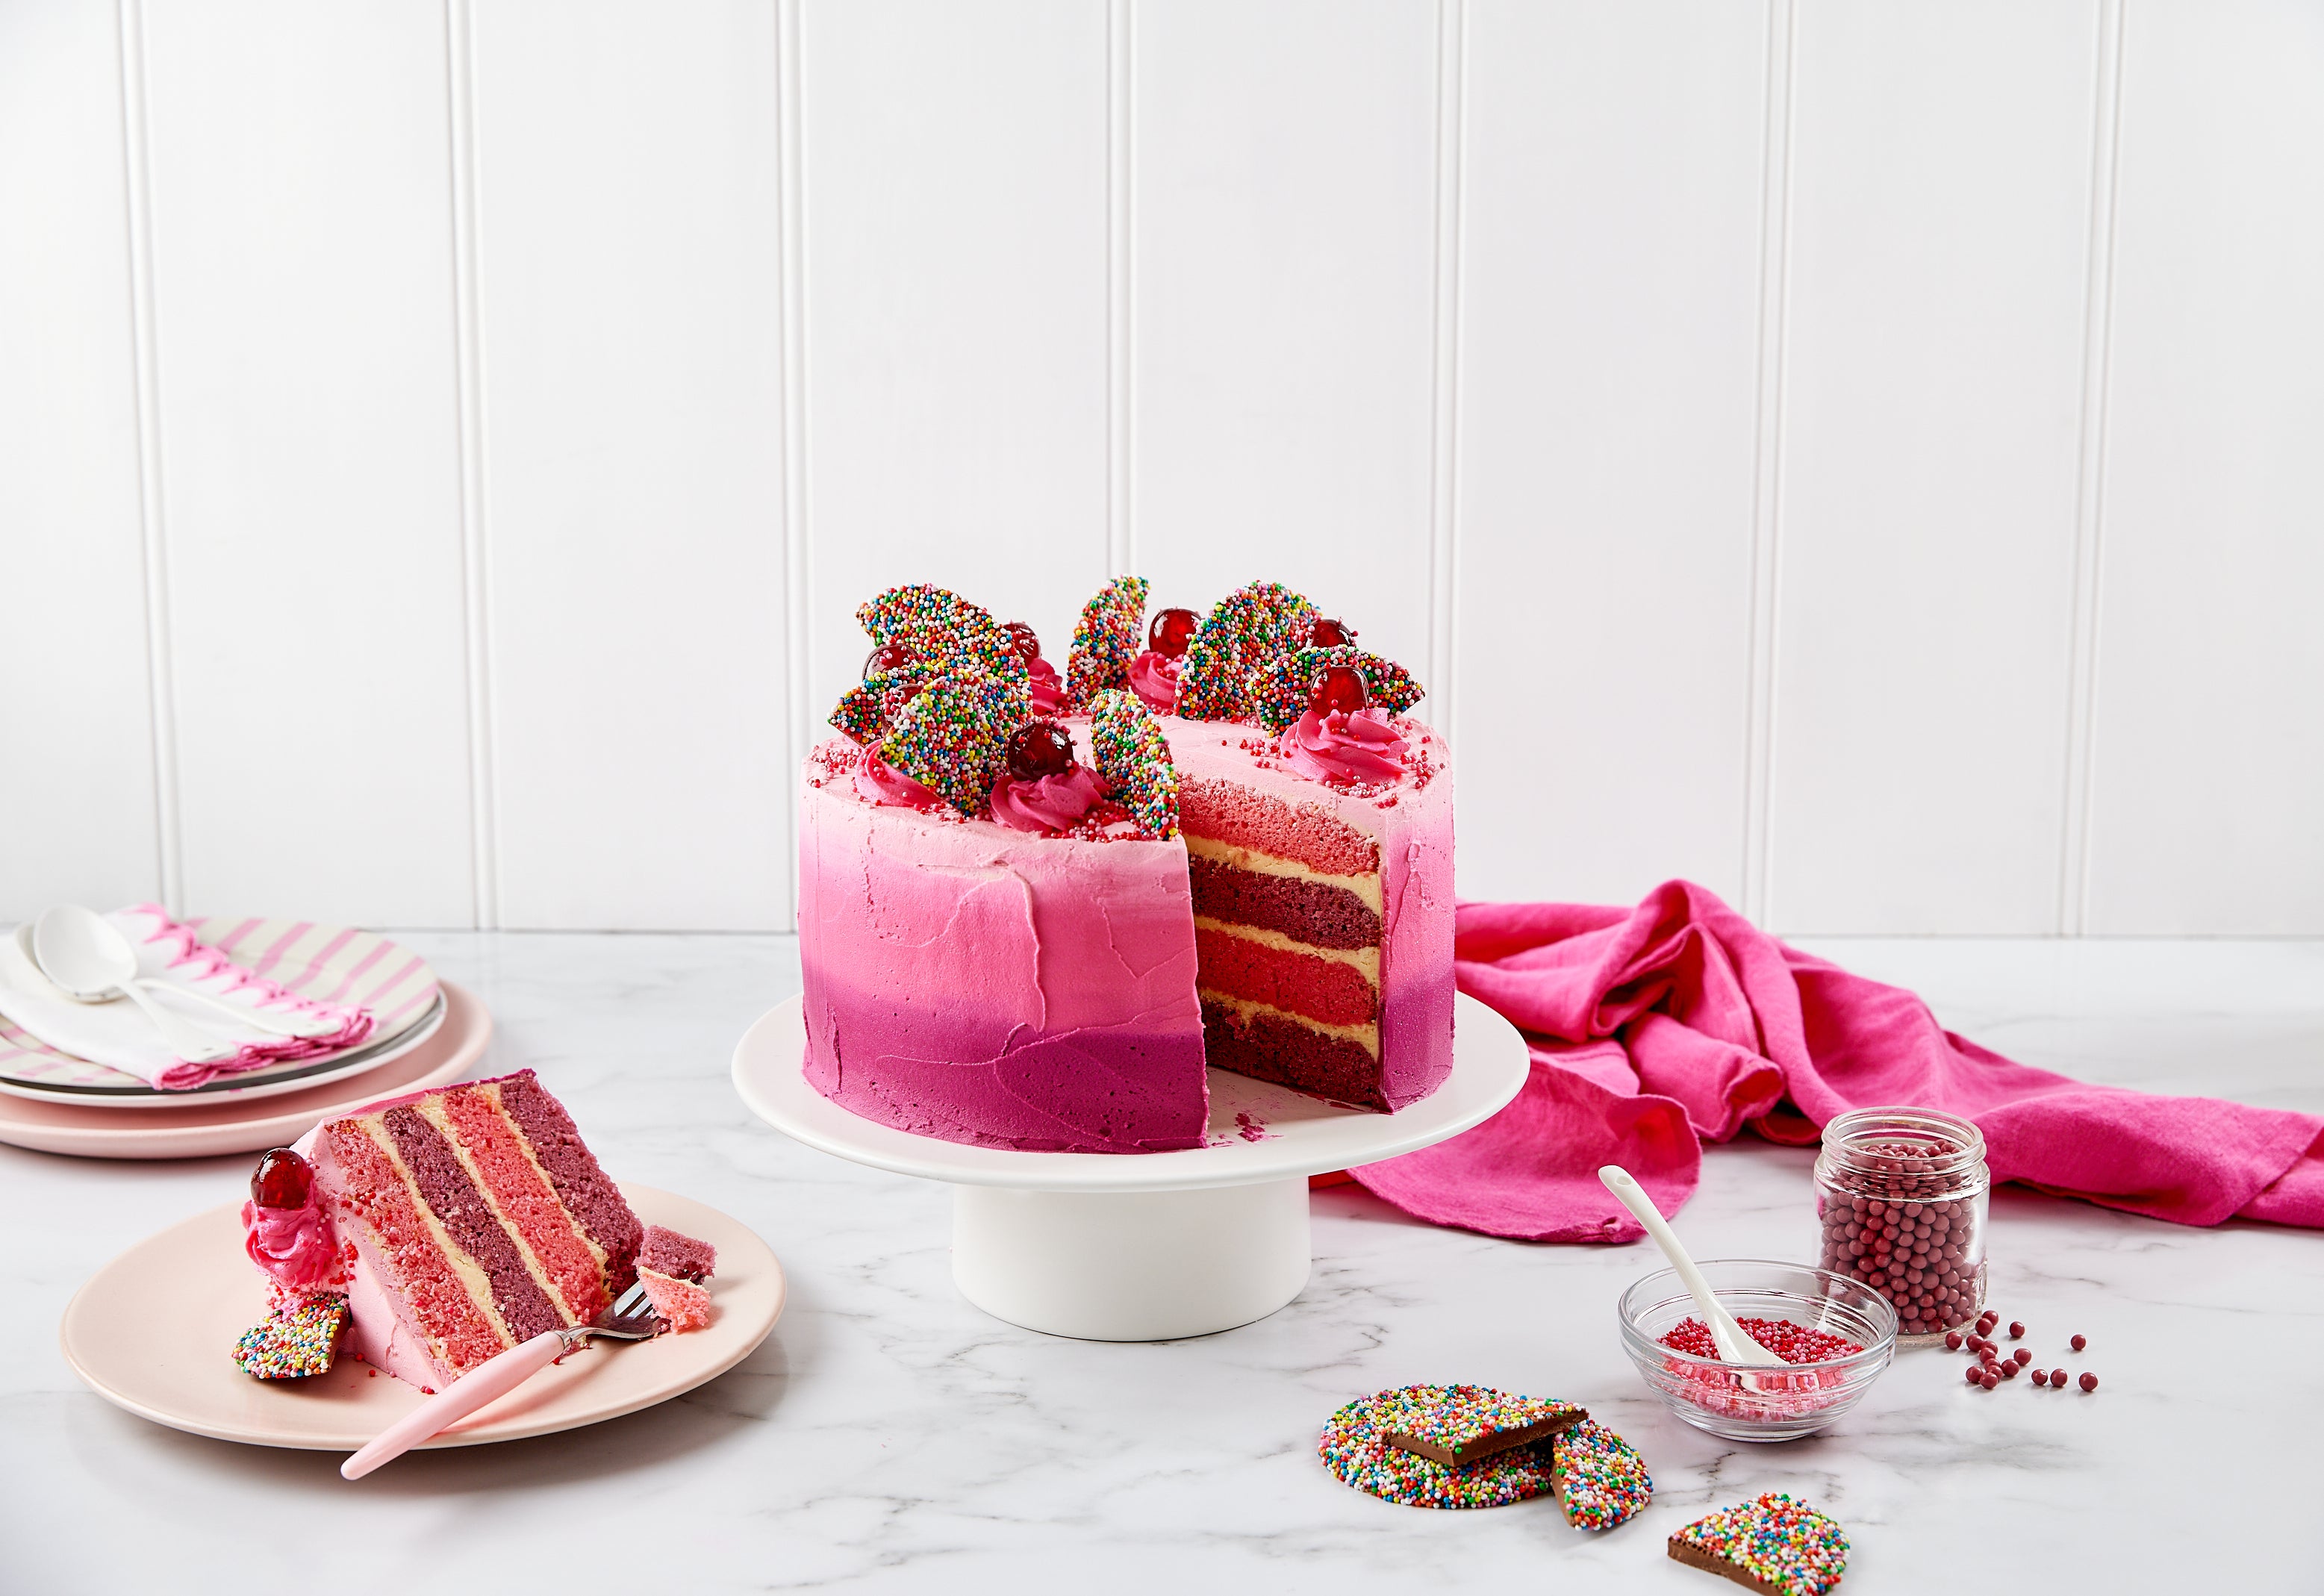 Raspberry Mousse Red Velvet Cake - Home. Made. Interest.